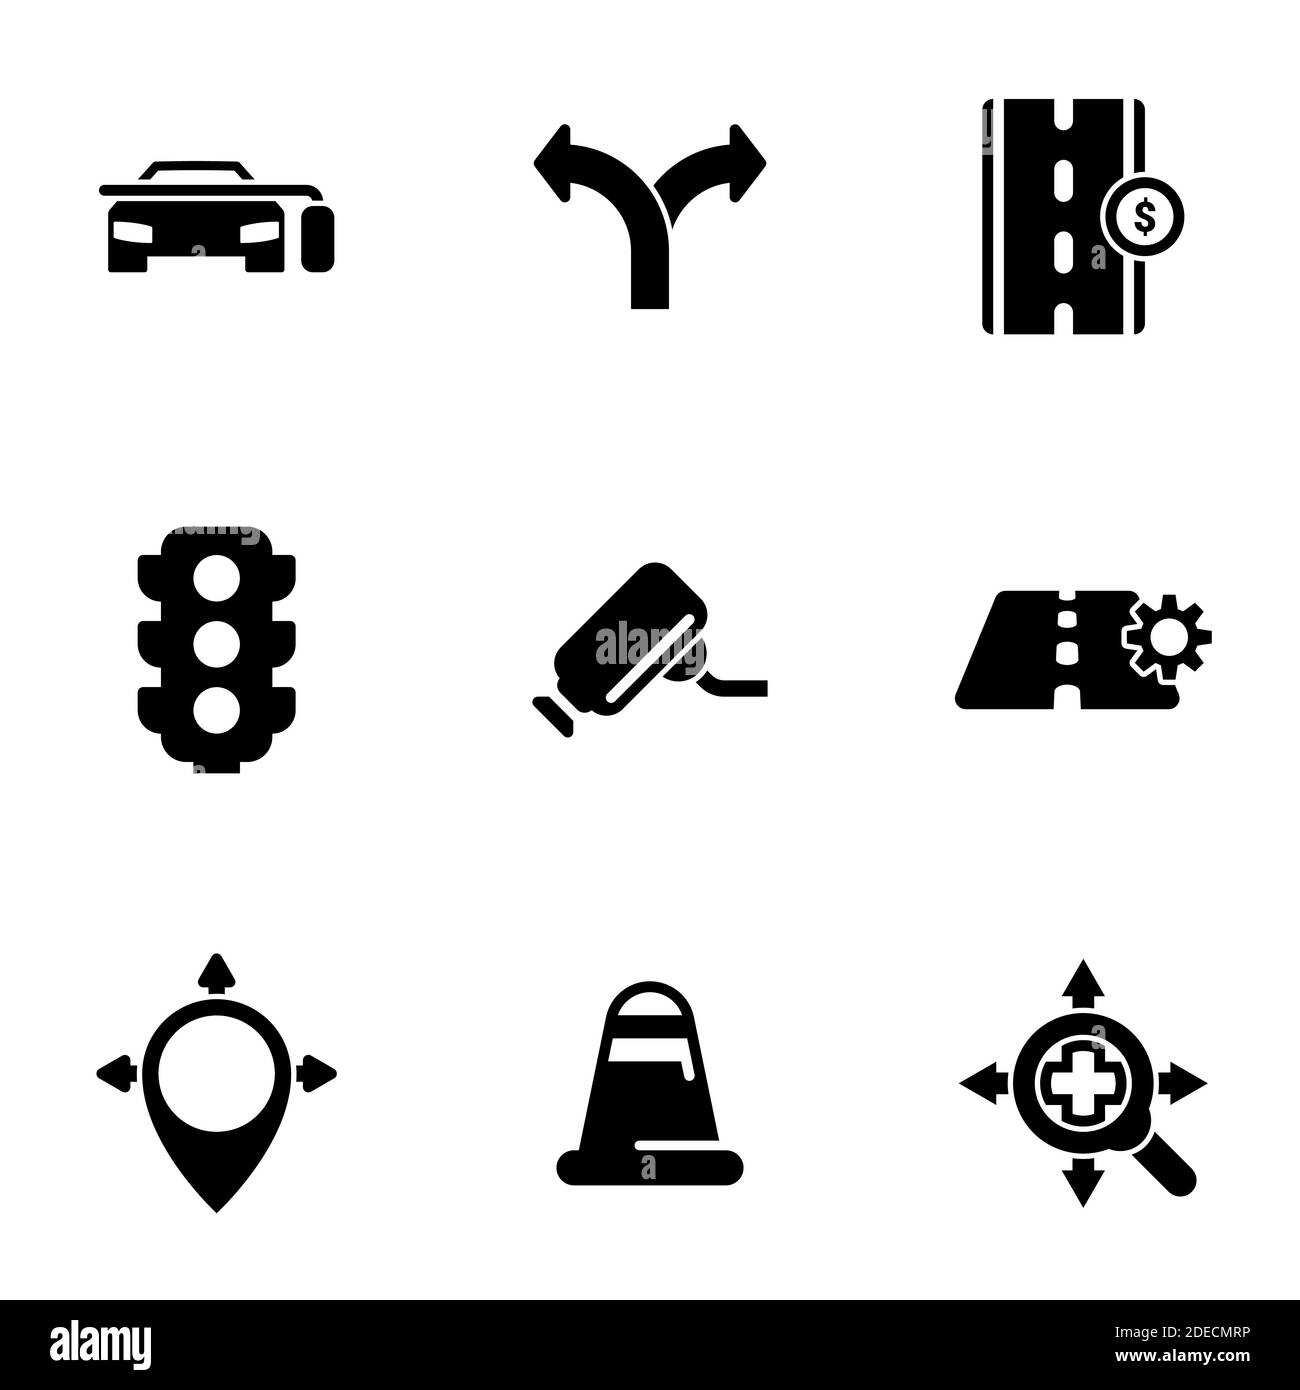 Ensemble d'icônes simples sur un thème route, trafic, voiture, vecteur, set. Arrière-plan blanc Illustration de Vecteur